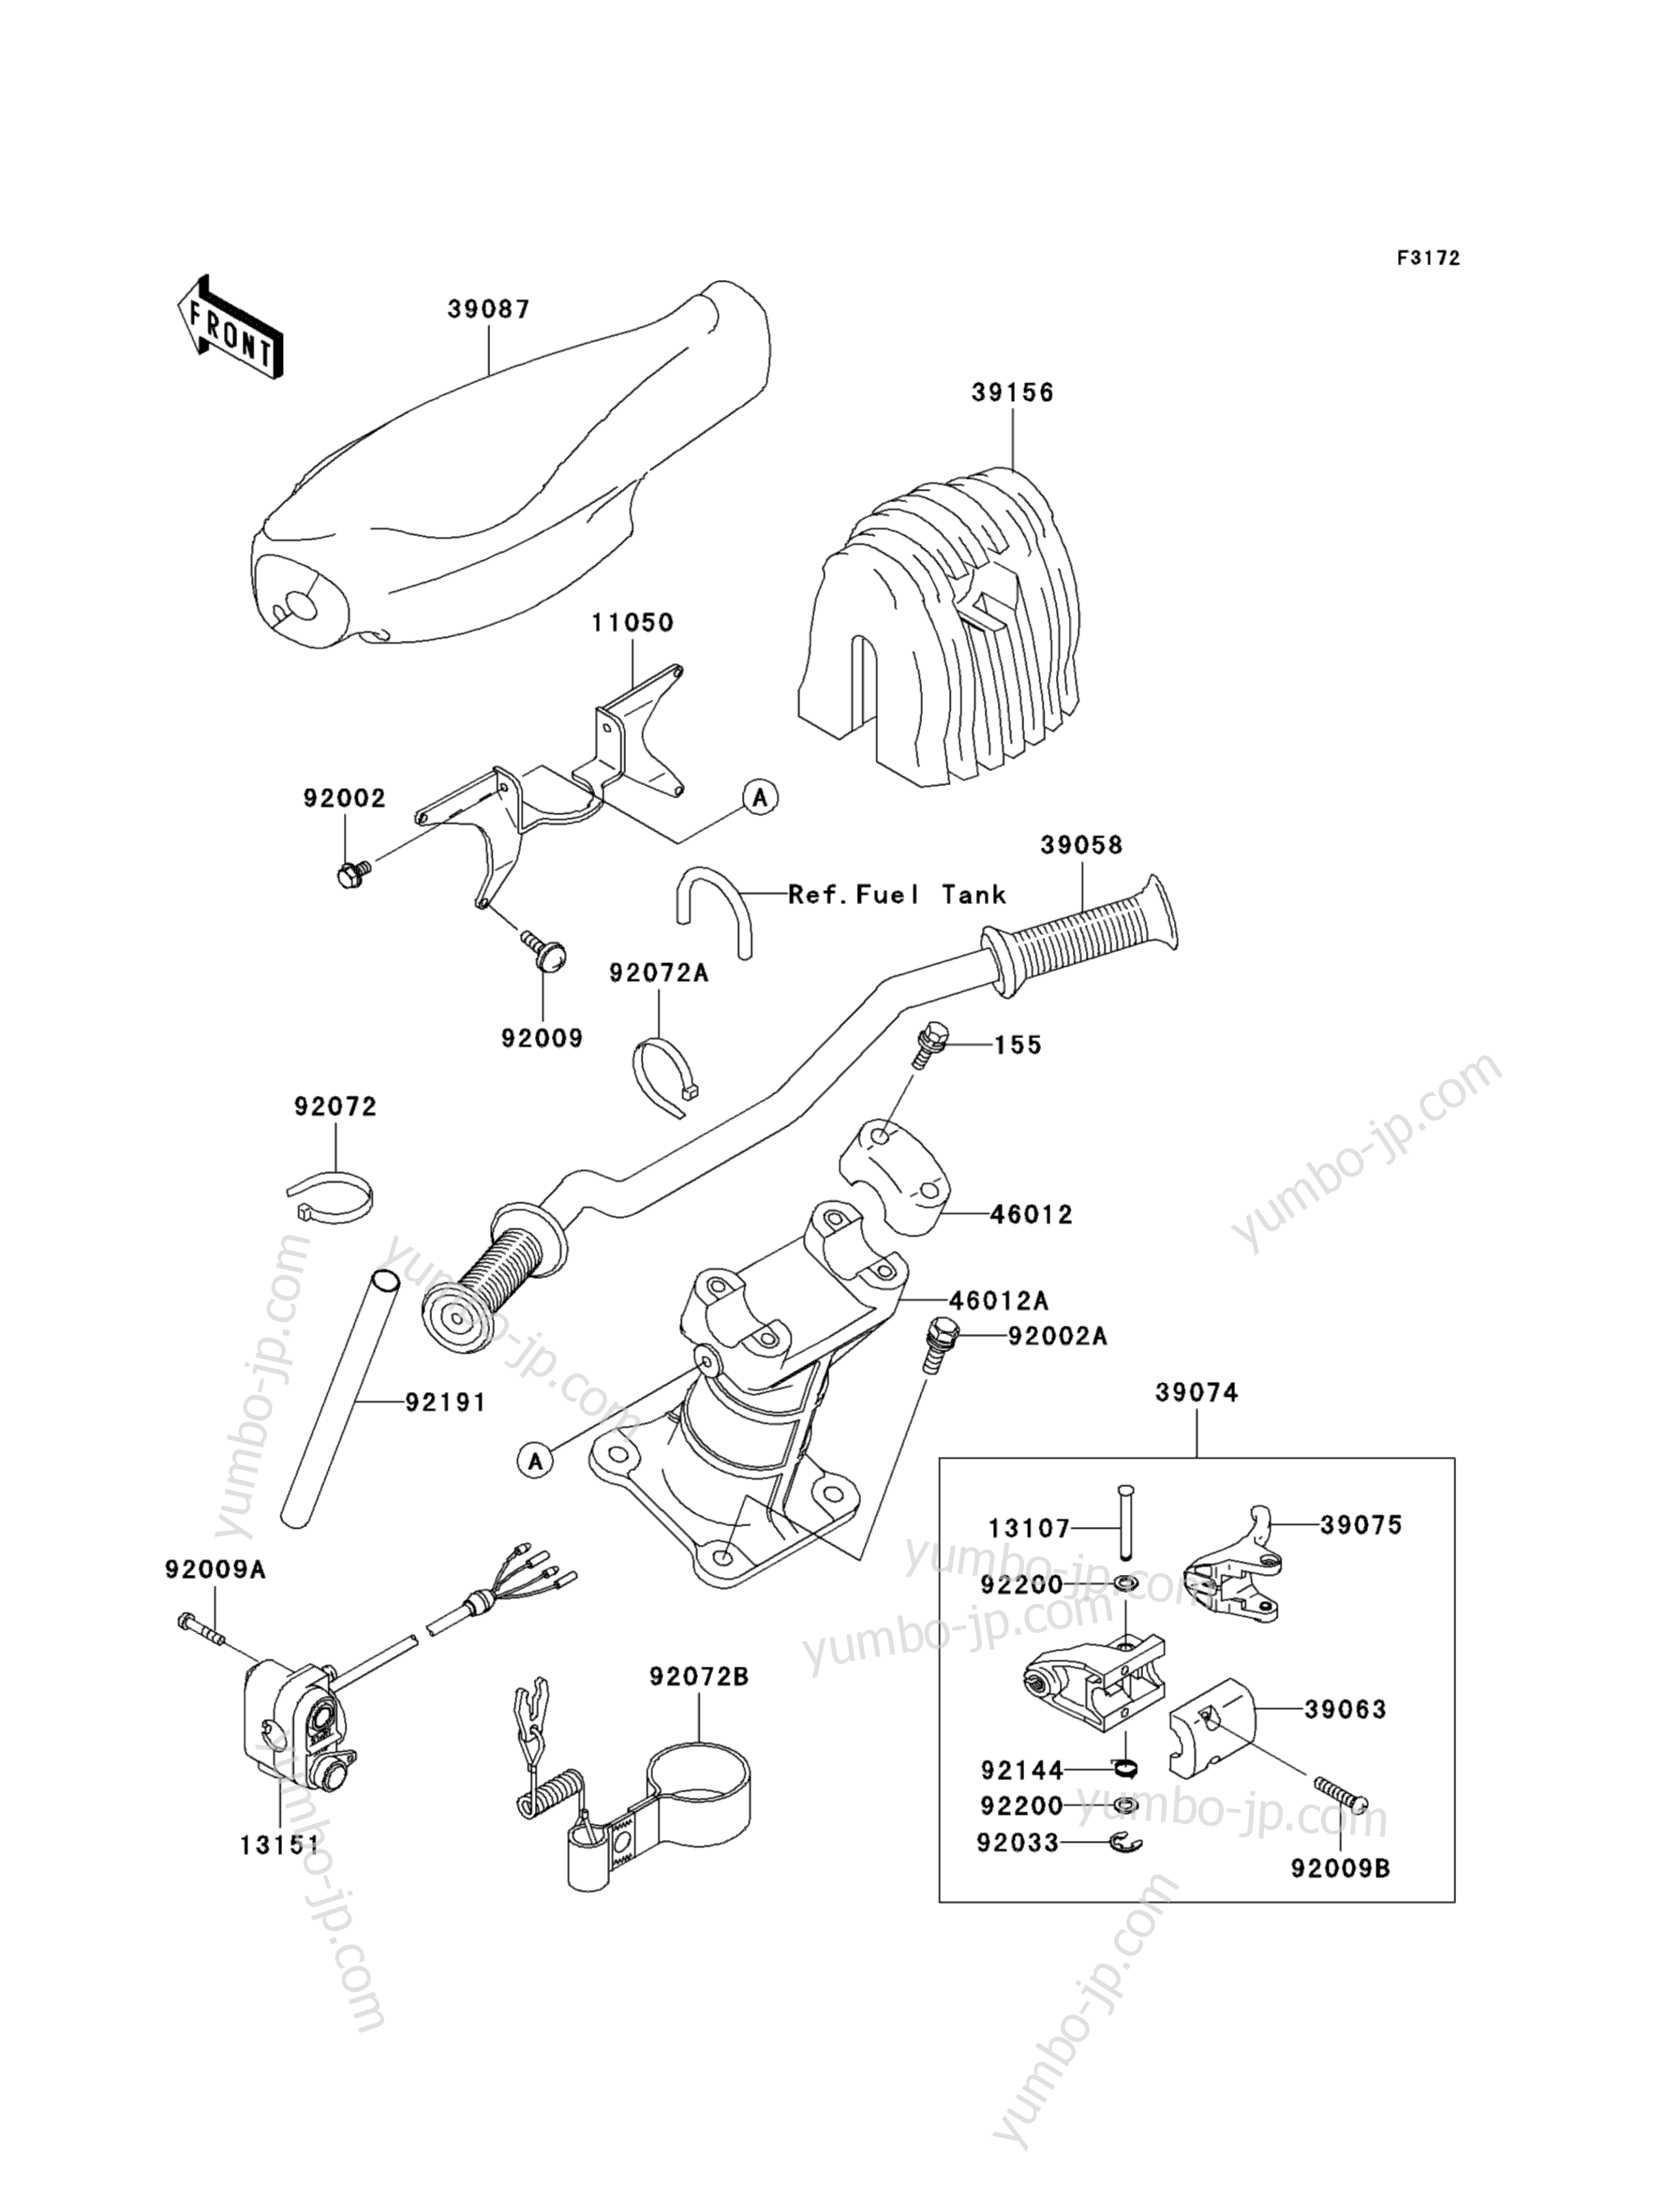 Румпель (рукоятка управления) для гидроциклов KAWASAKI JET SKI 1100 STX D.I. (JT1100-G1) 2003 г.